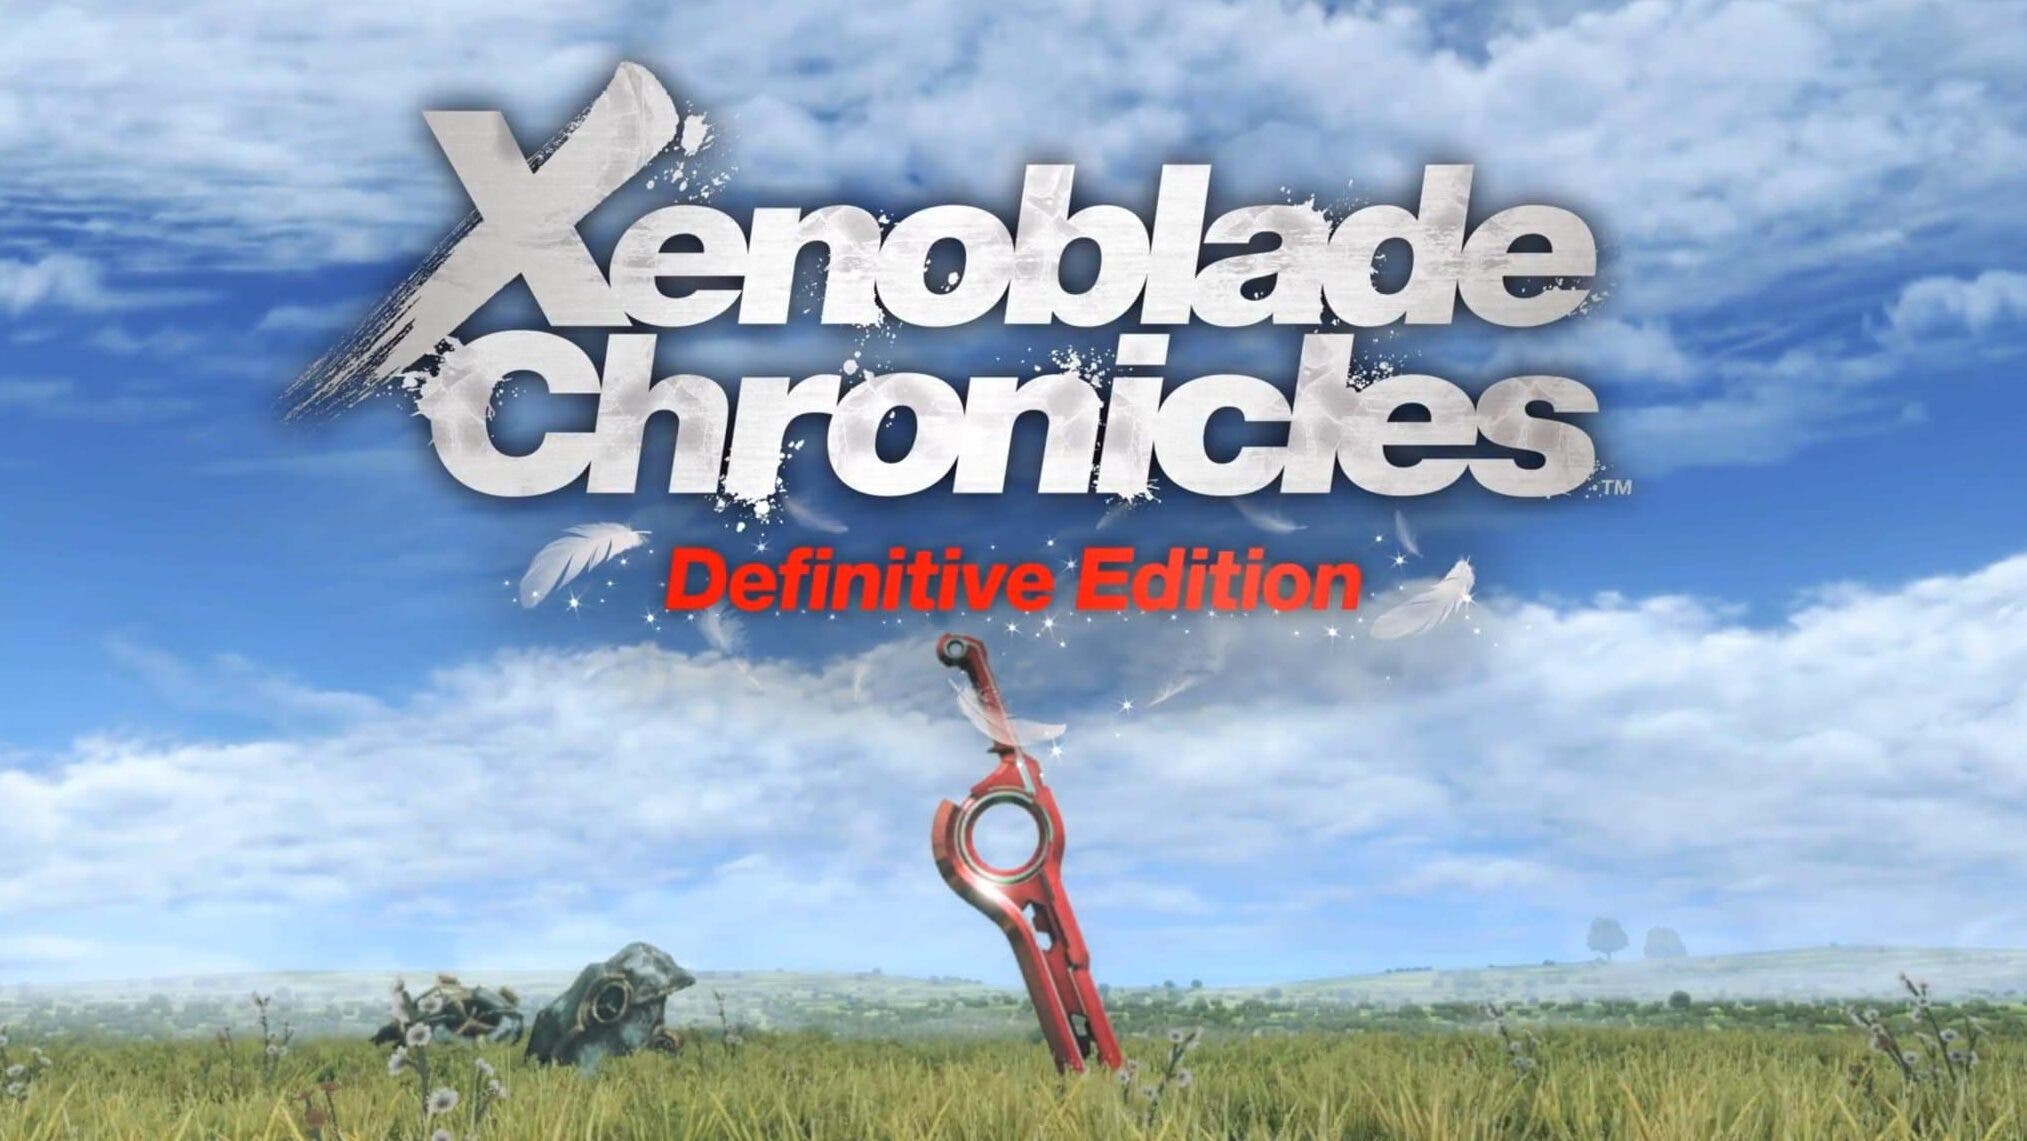 Xenoblade Chronicles: Definitive Edition contará con resolución dinámica y correrá a 30 fps estables